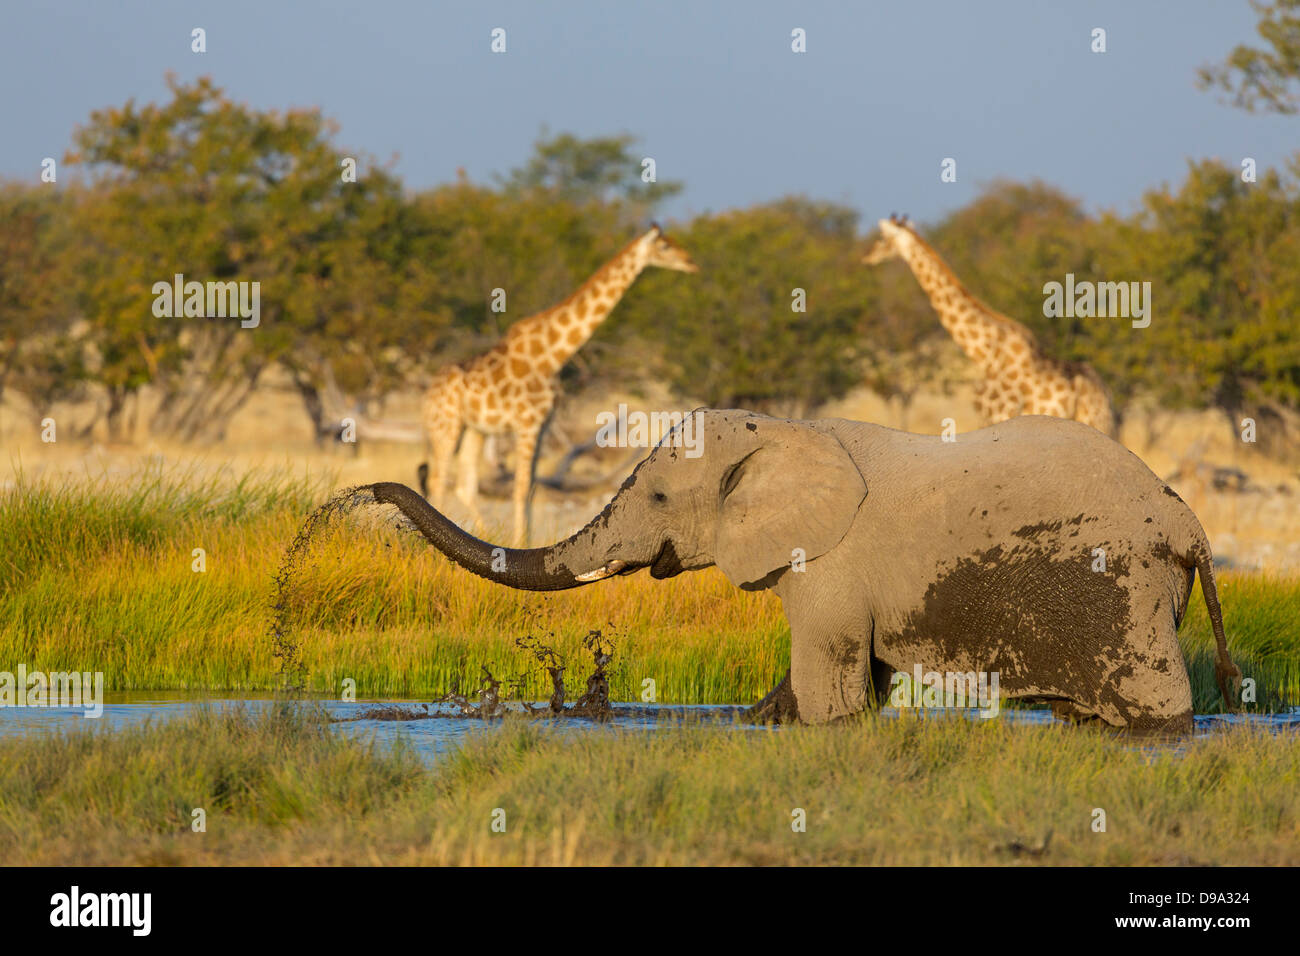 Bush de l'Afrique, l'éléphant, l'Éléphant de savane africaine Afrikanischer Elefant, Loxodonta africana Banque D'Images